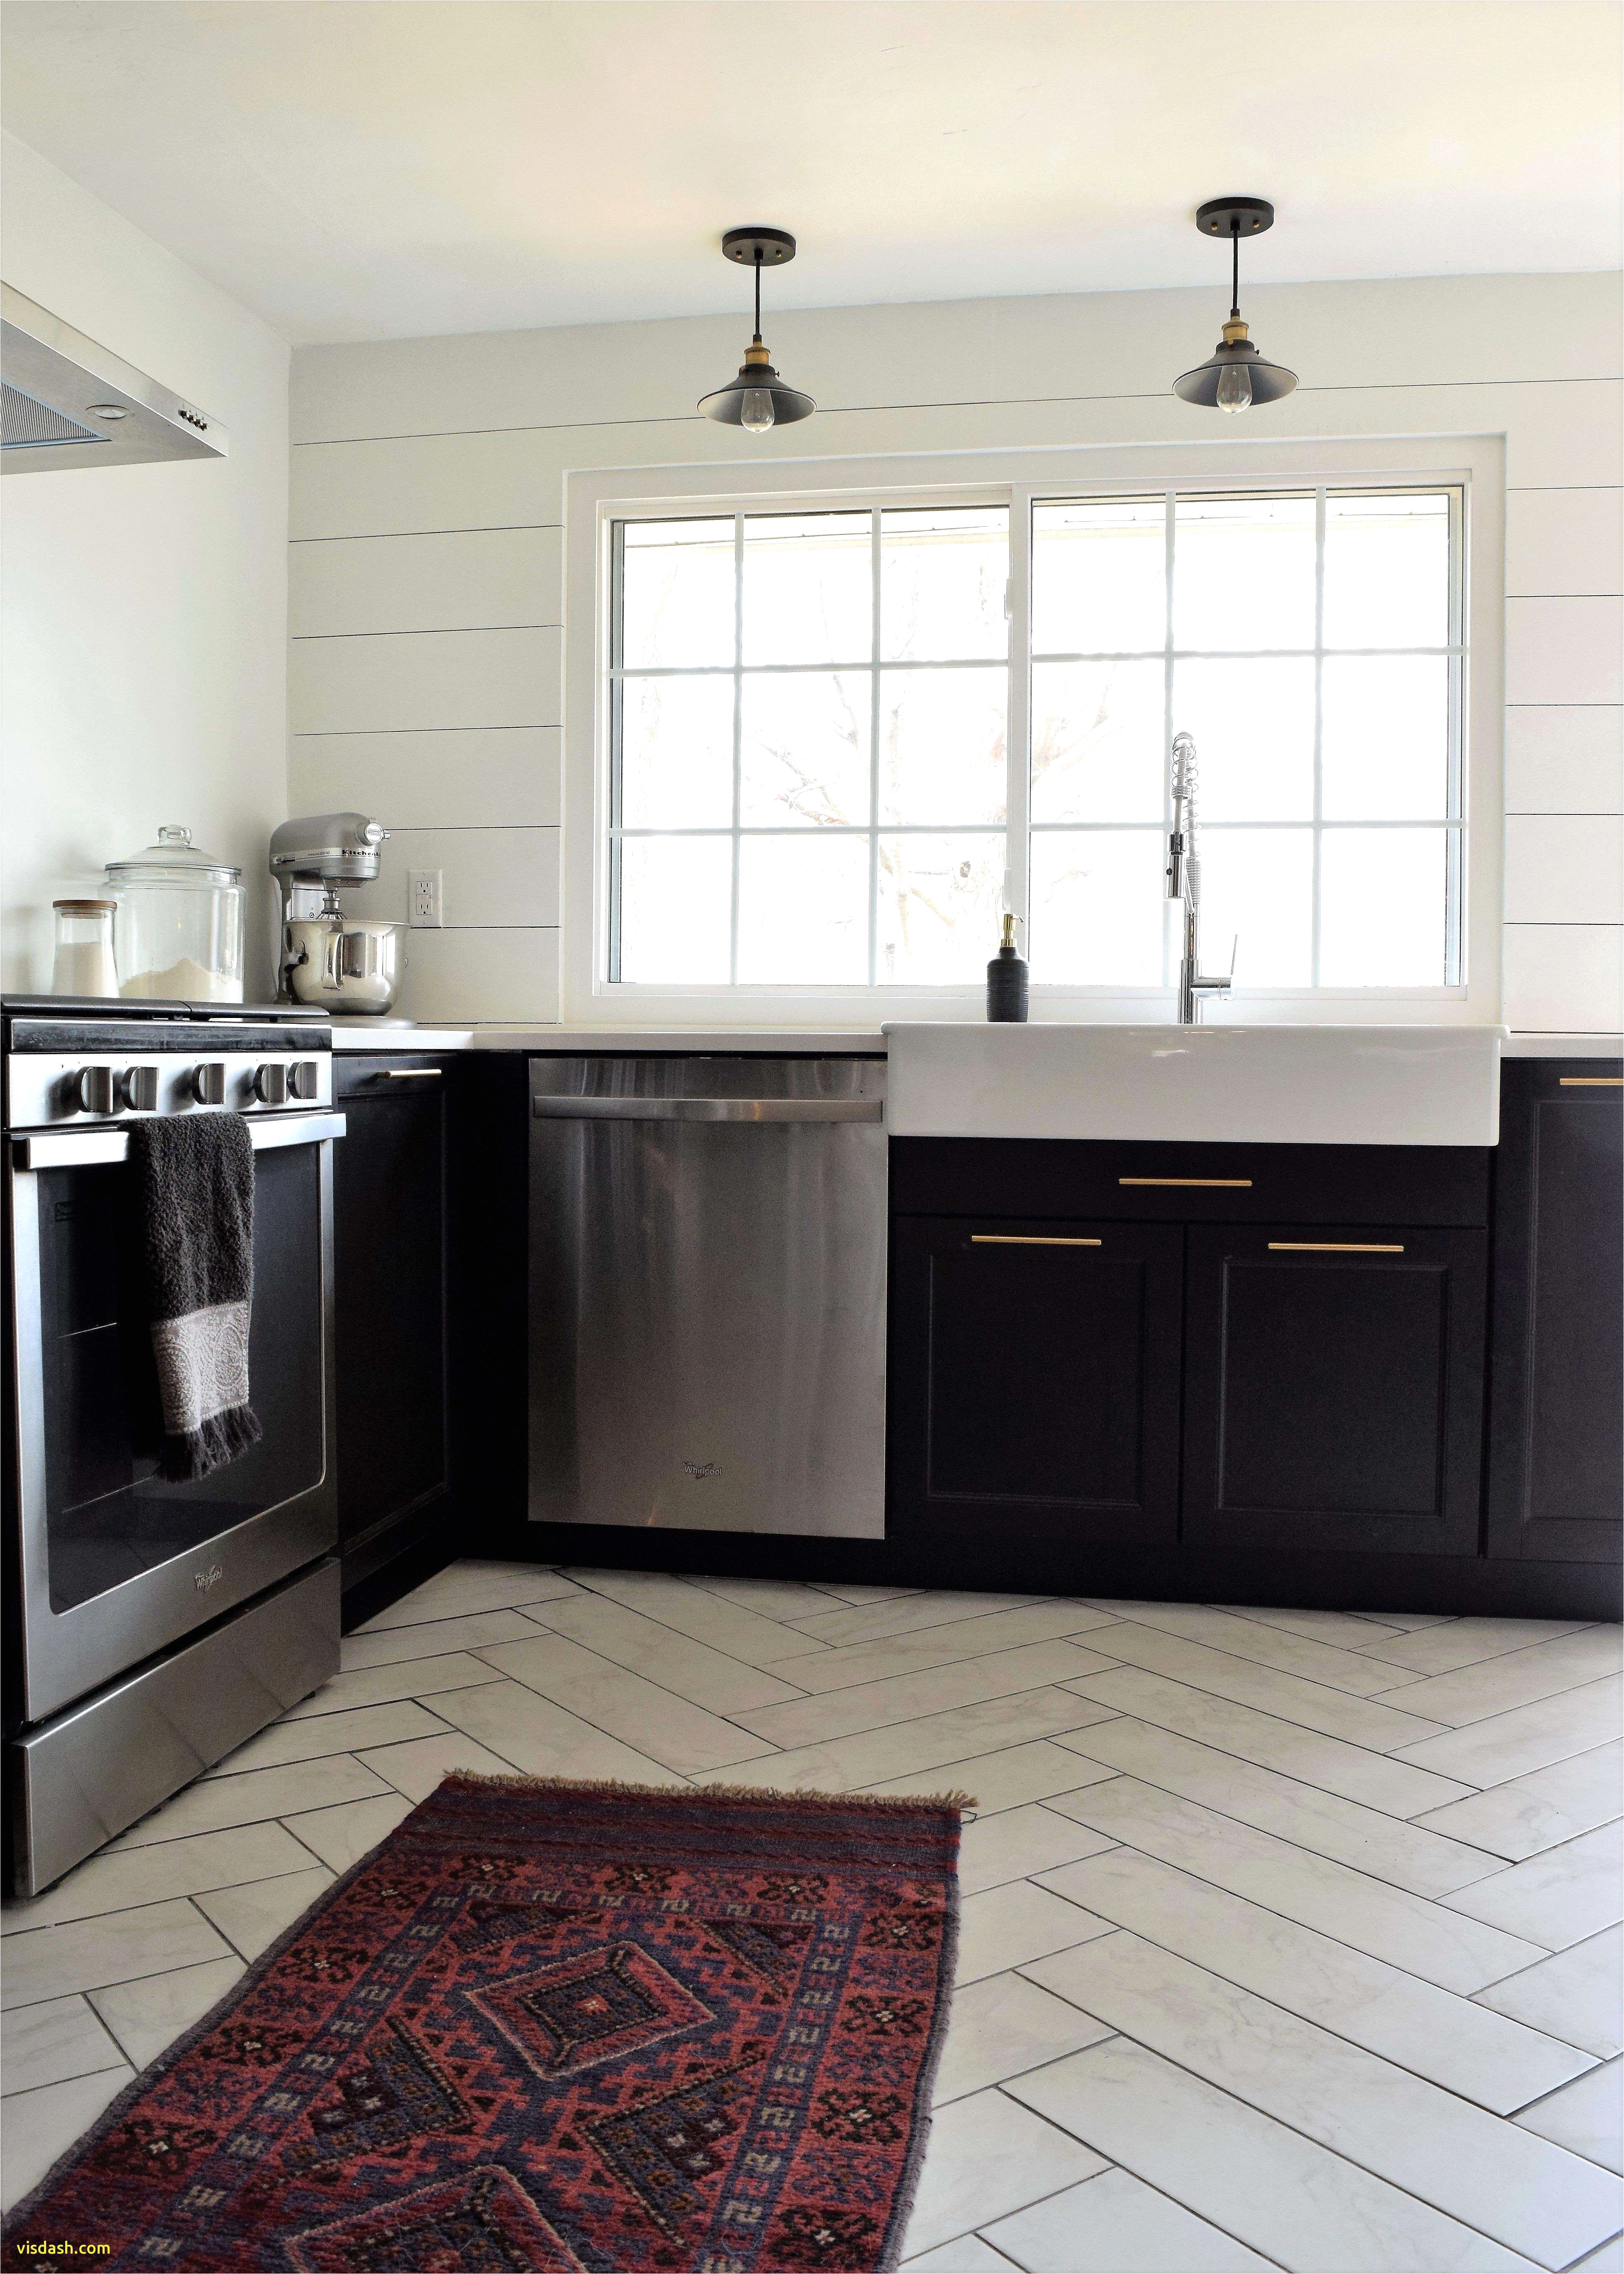 extraordinary tile kitchen floor at kitchen design 0d design kitchen ideas design simple kitchen